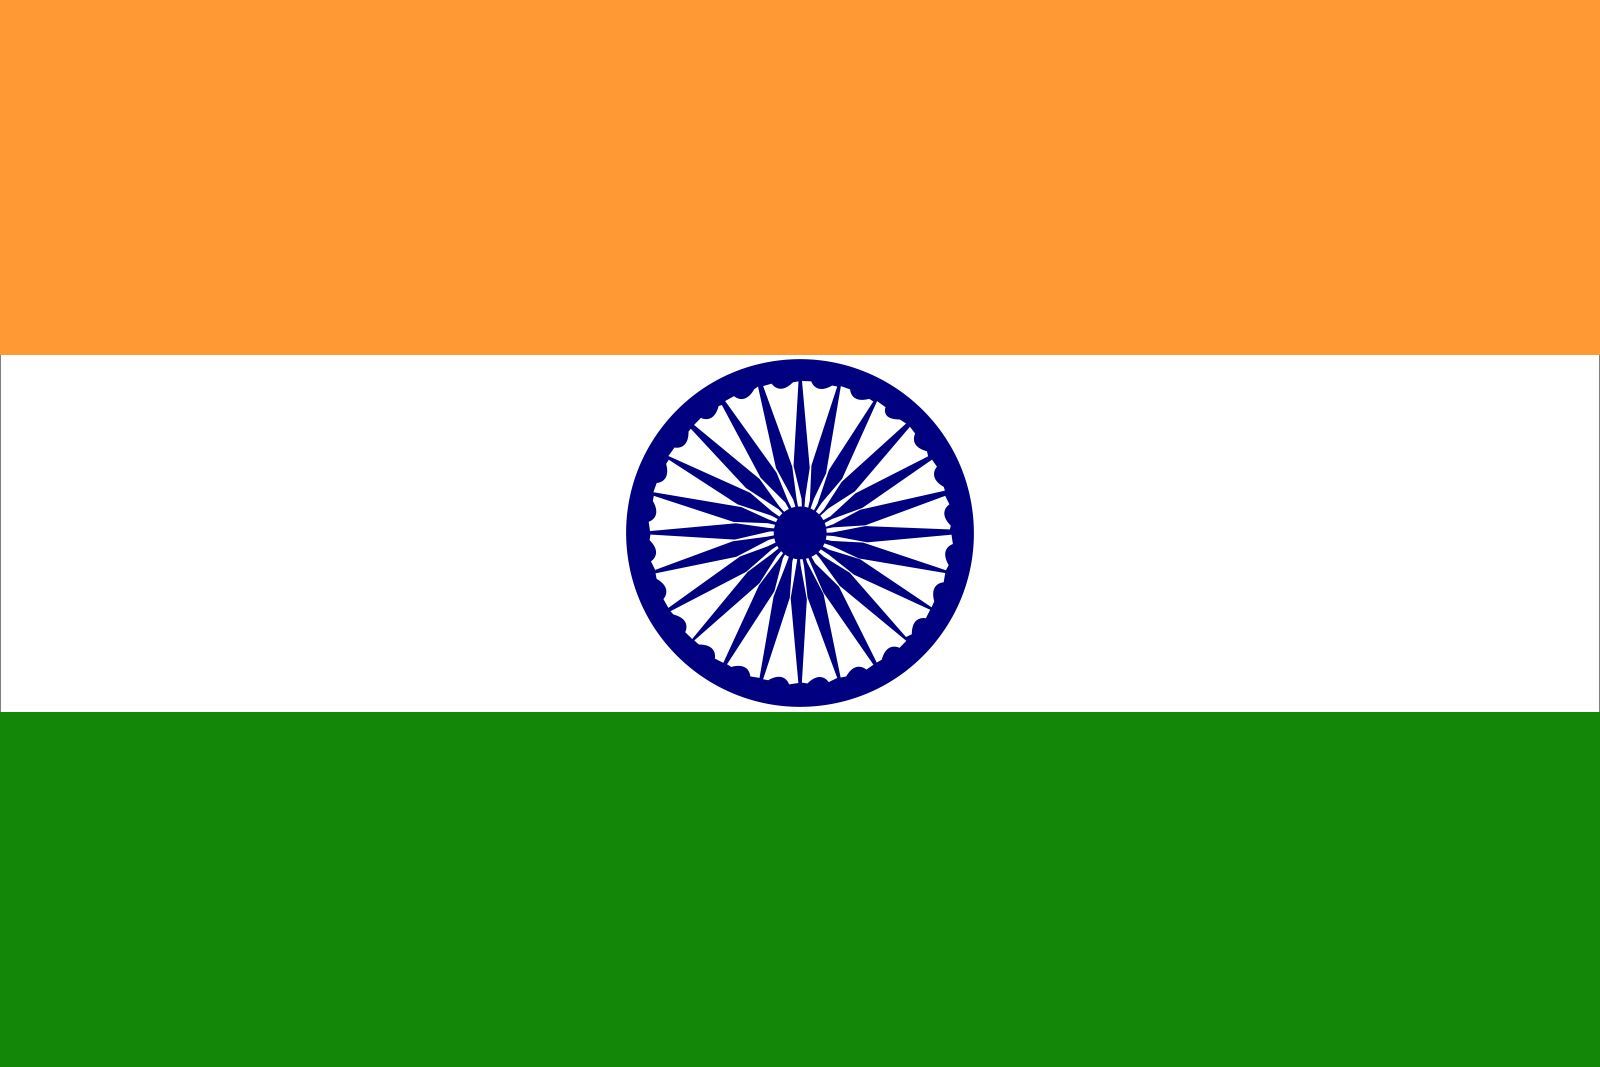 Leia coloniza India 